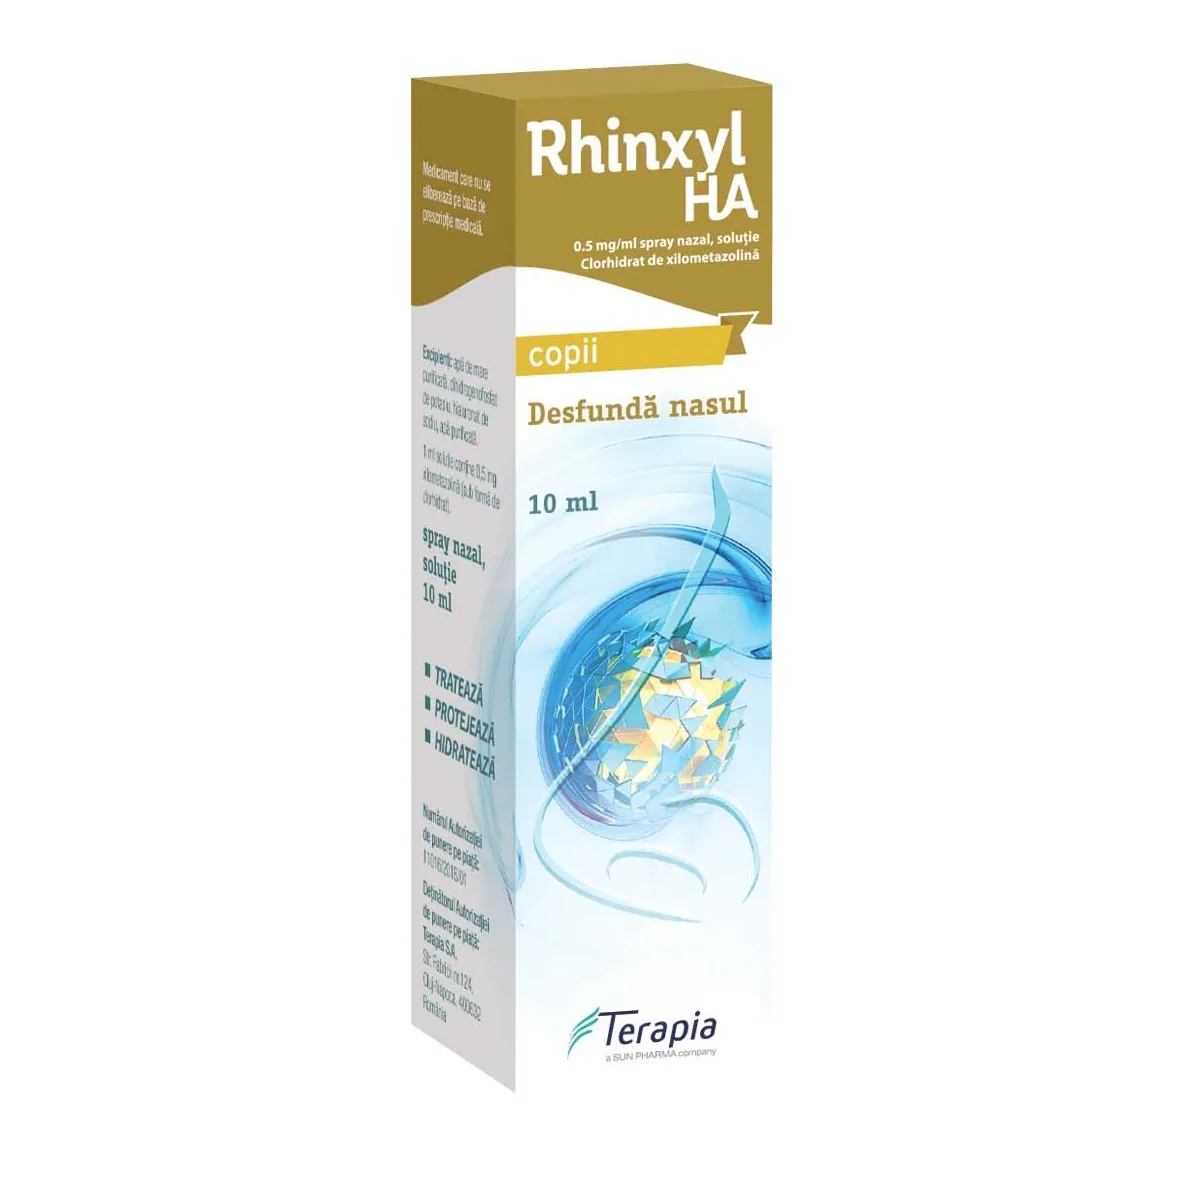 Rhinxyl HA 0.05% spray nazal x 10ml